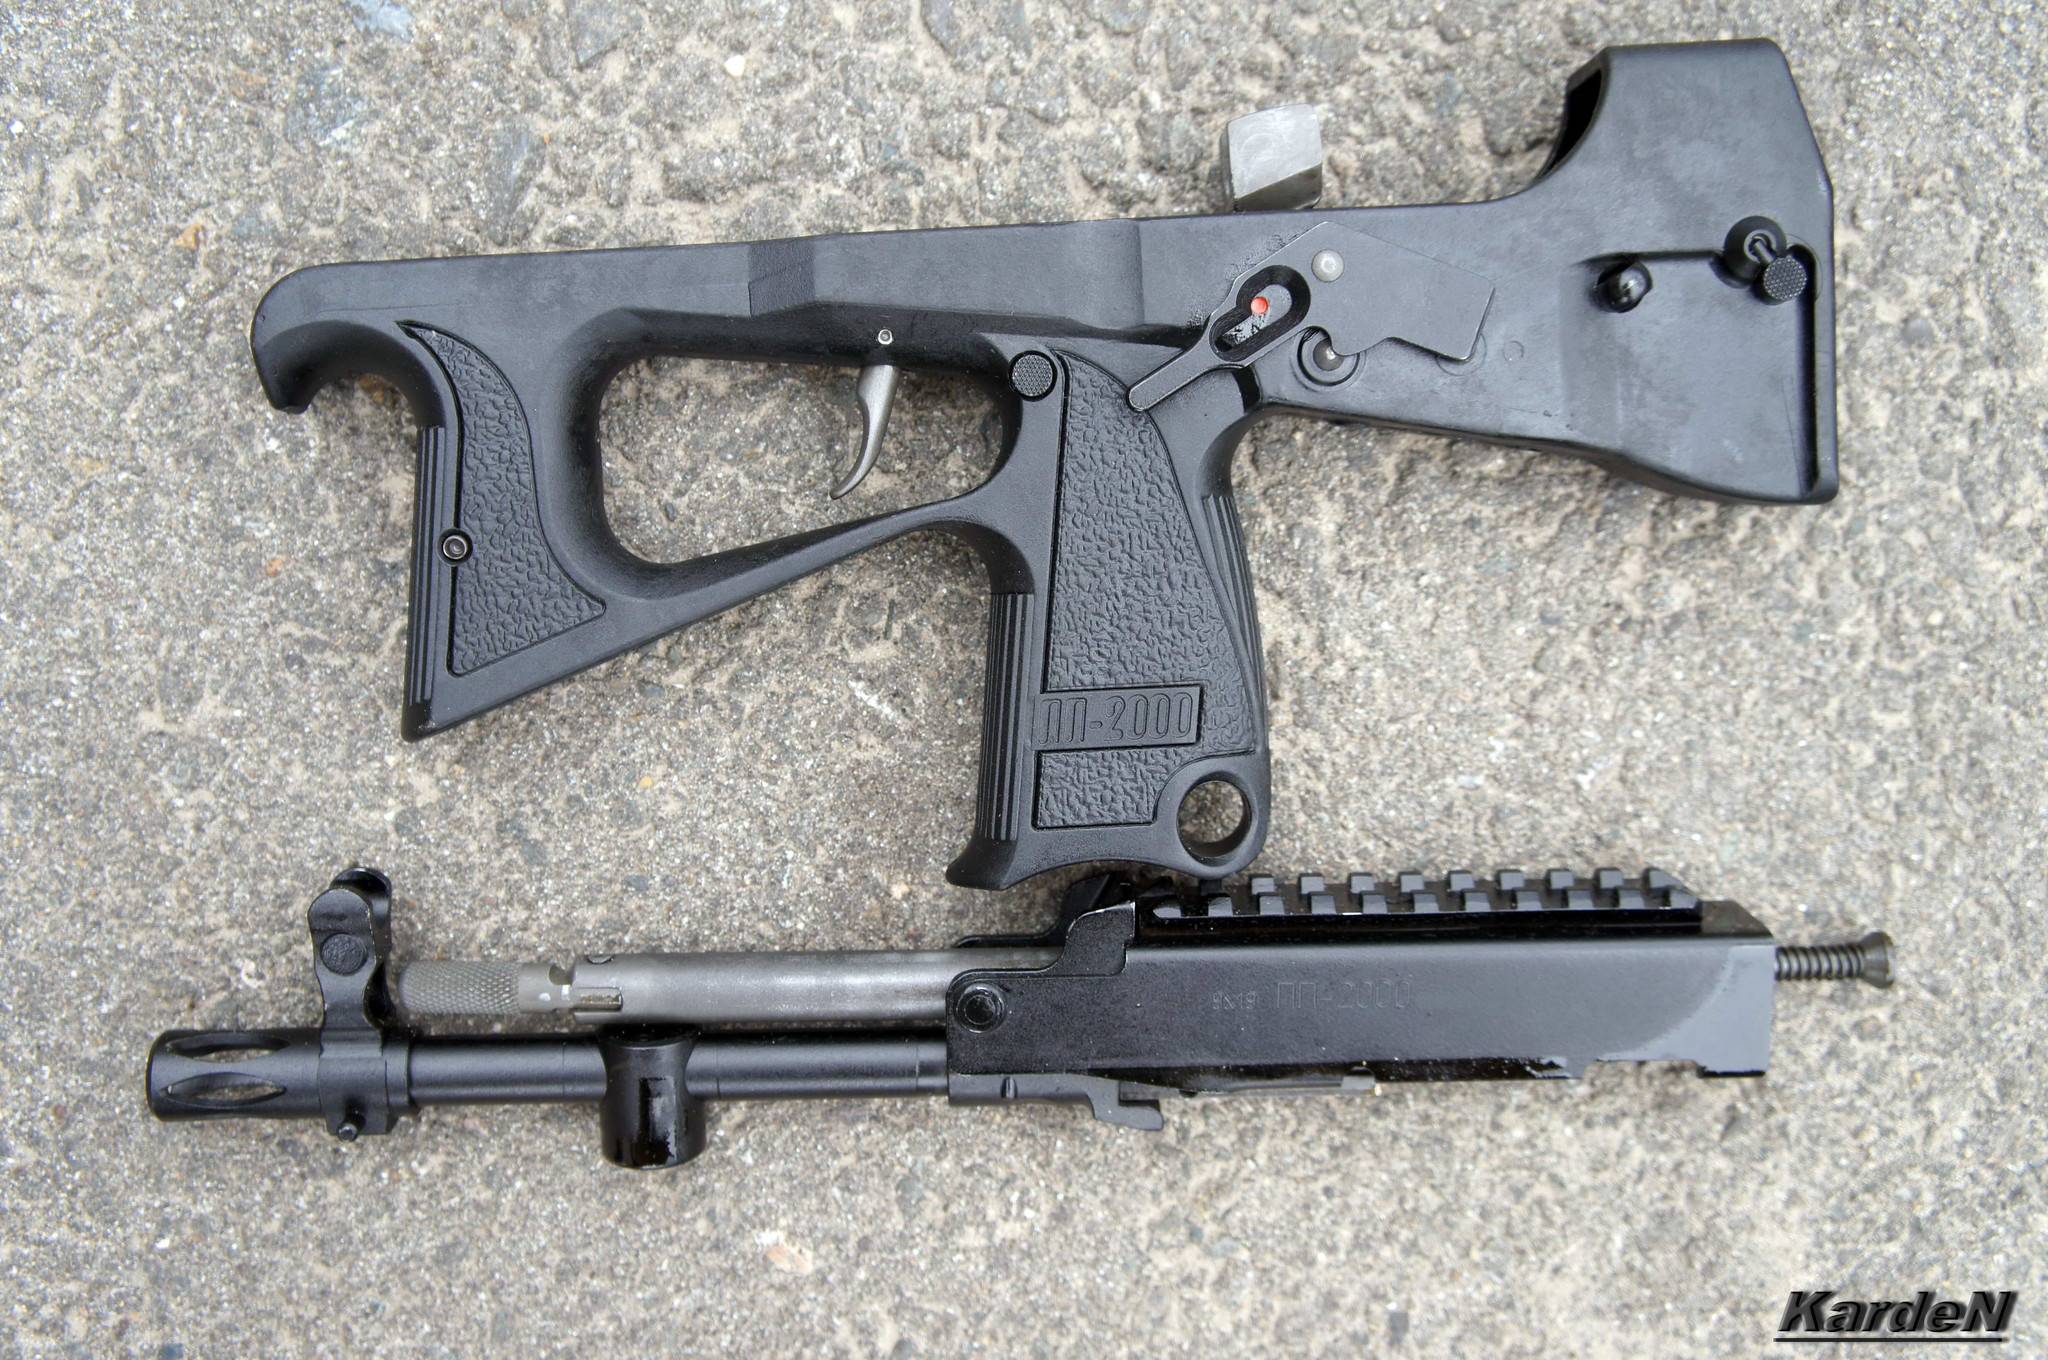 Российский пистолет-пулемёт пп-2000 - милитари блог